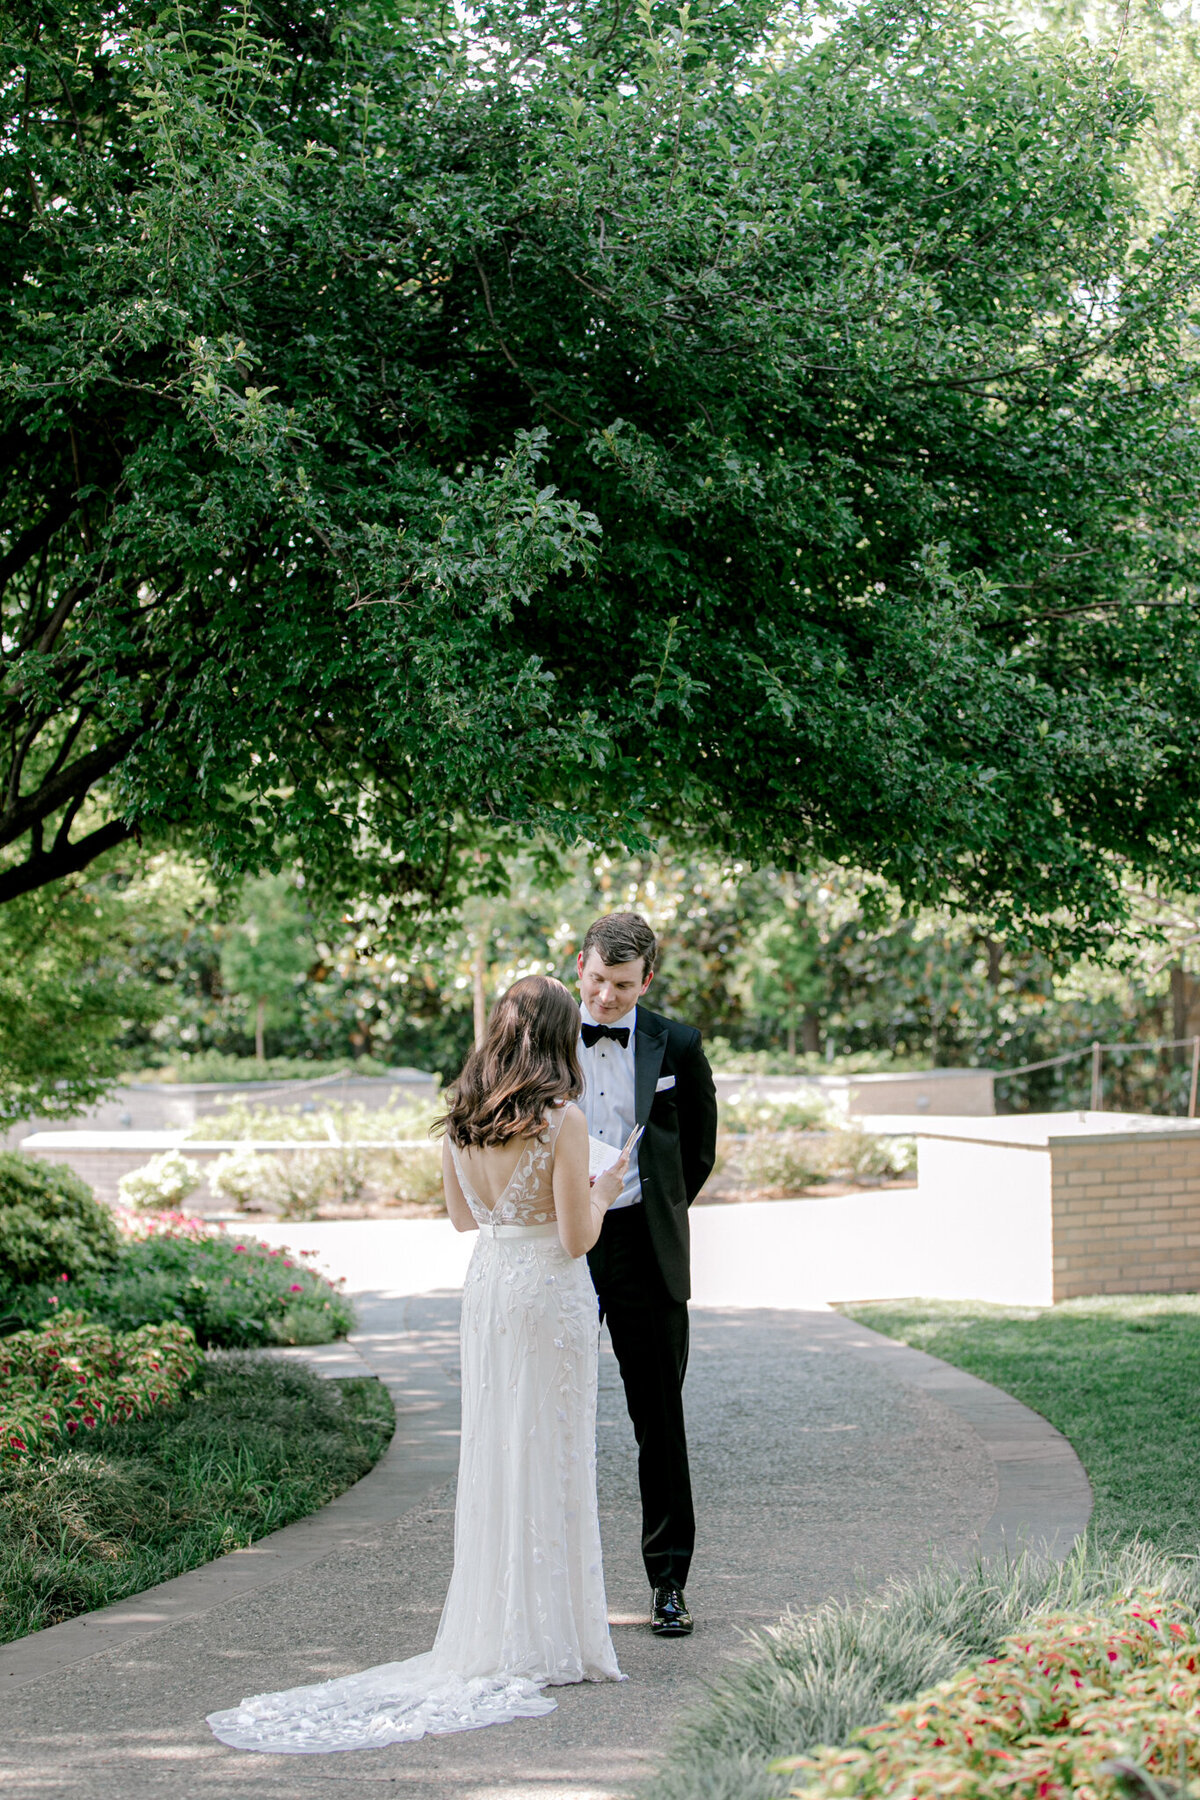 Gena & Matt's Wedding at the Dallas Arboretum | Dallas Wedding Photographer | Sami Kathryn Photography-74